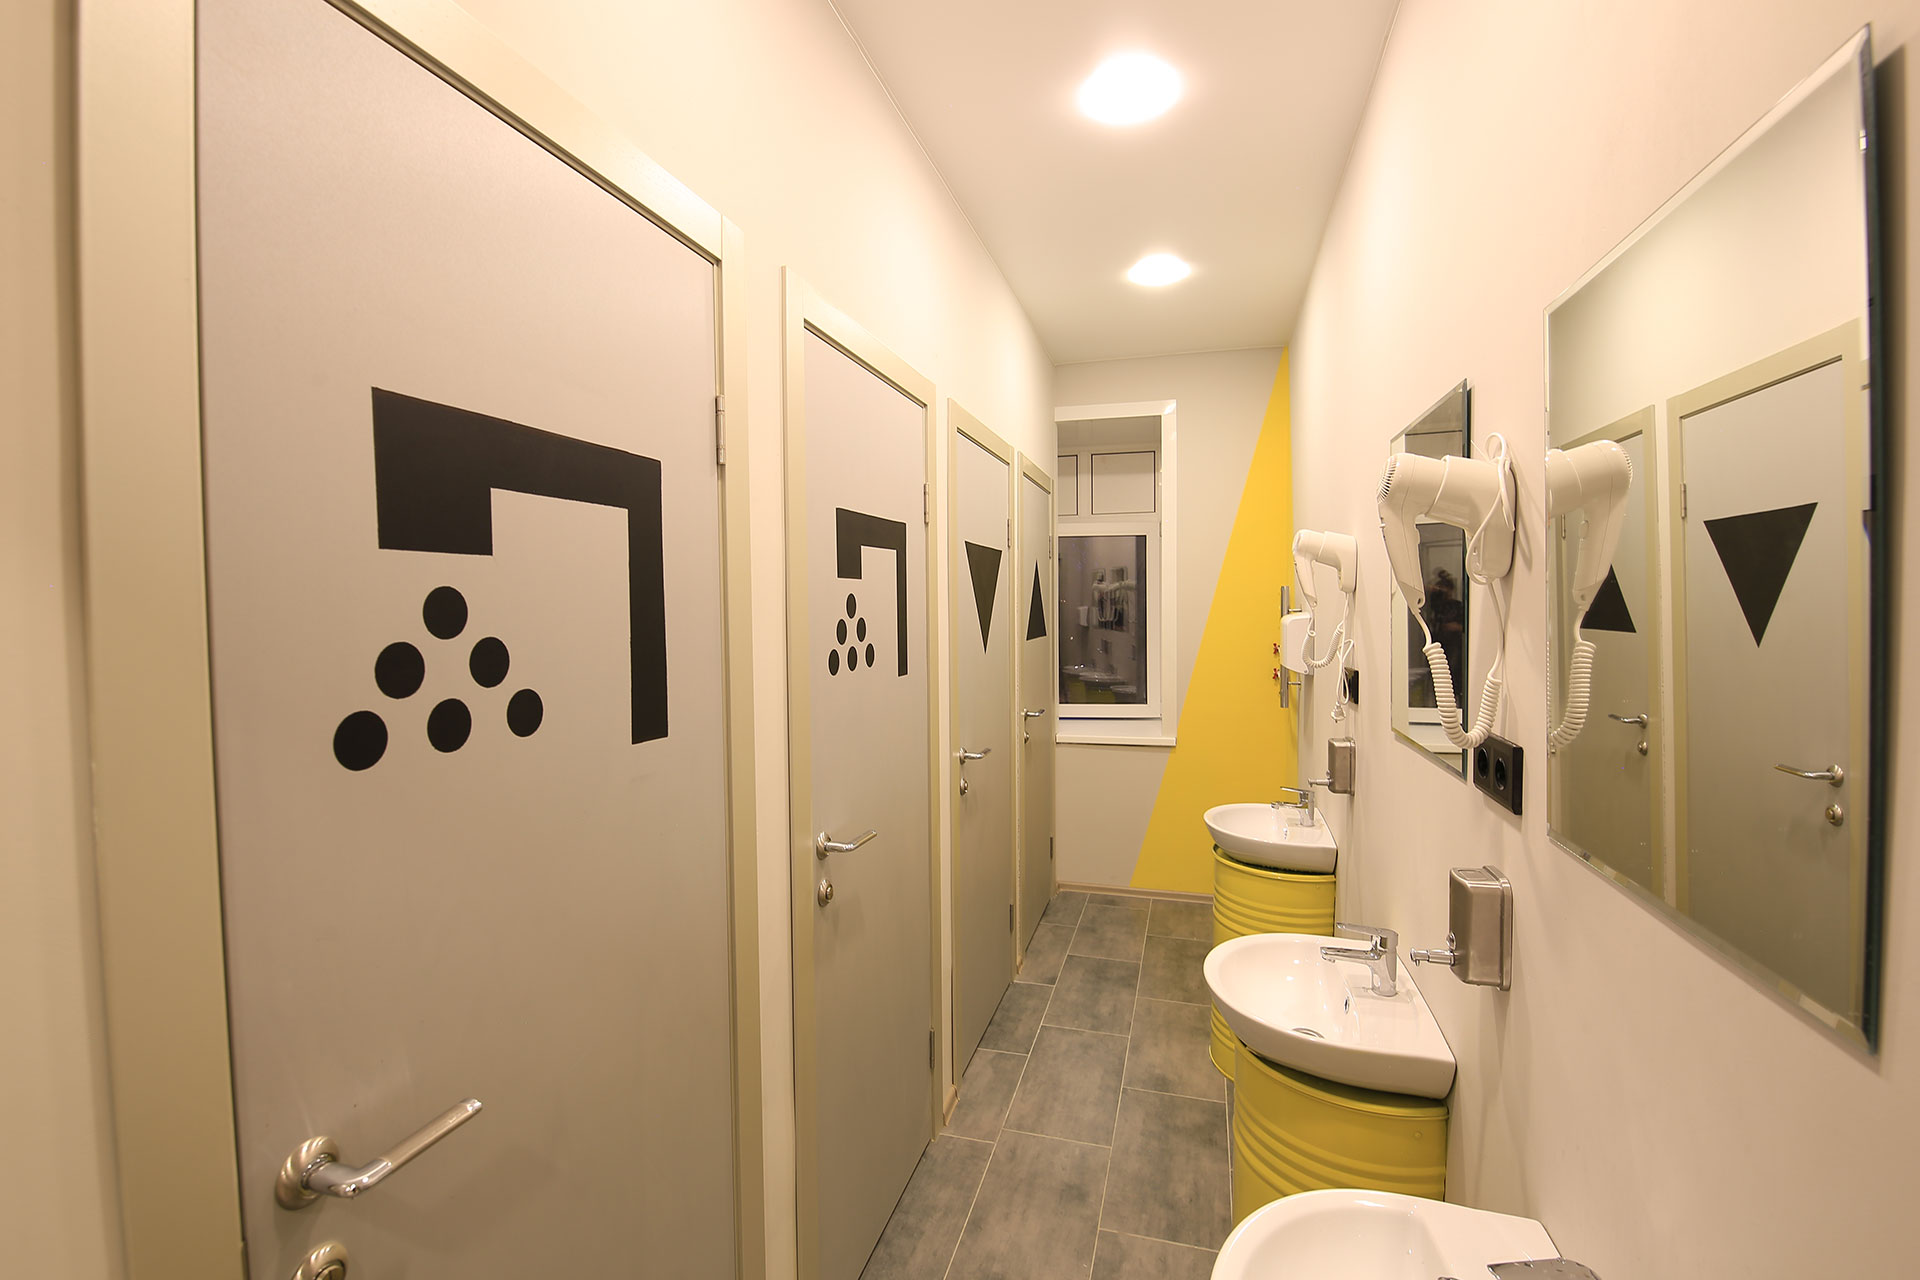 Душевые и туалеты в хостеле “Артист” Москва.